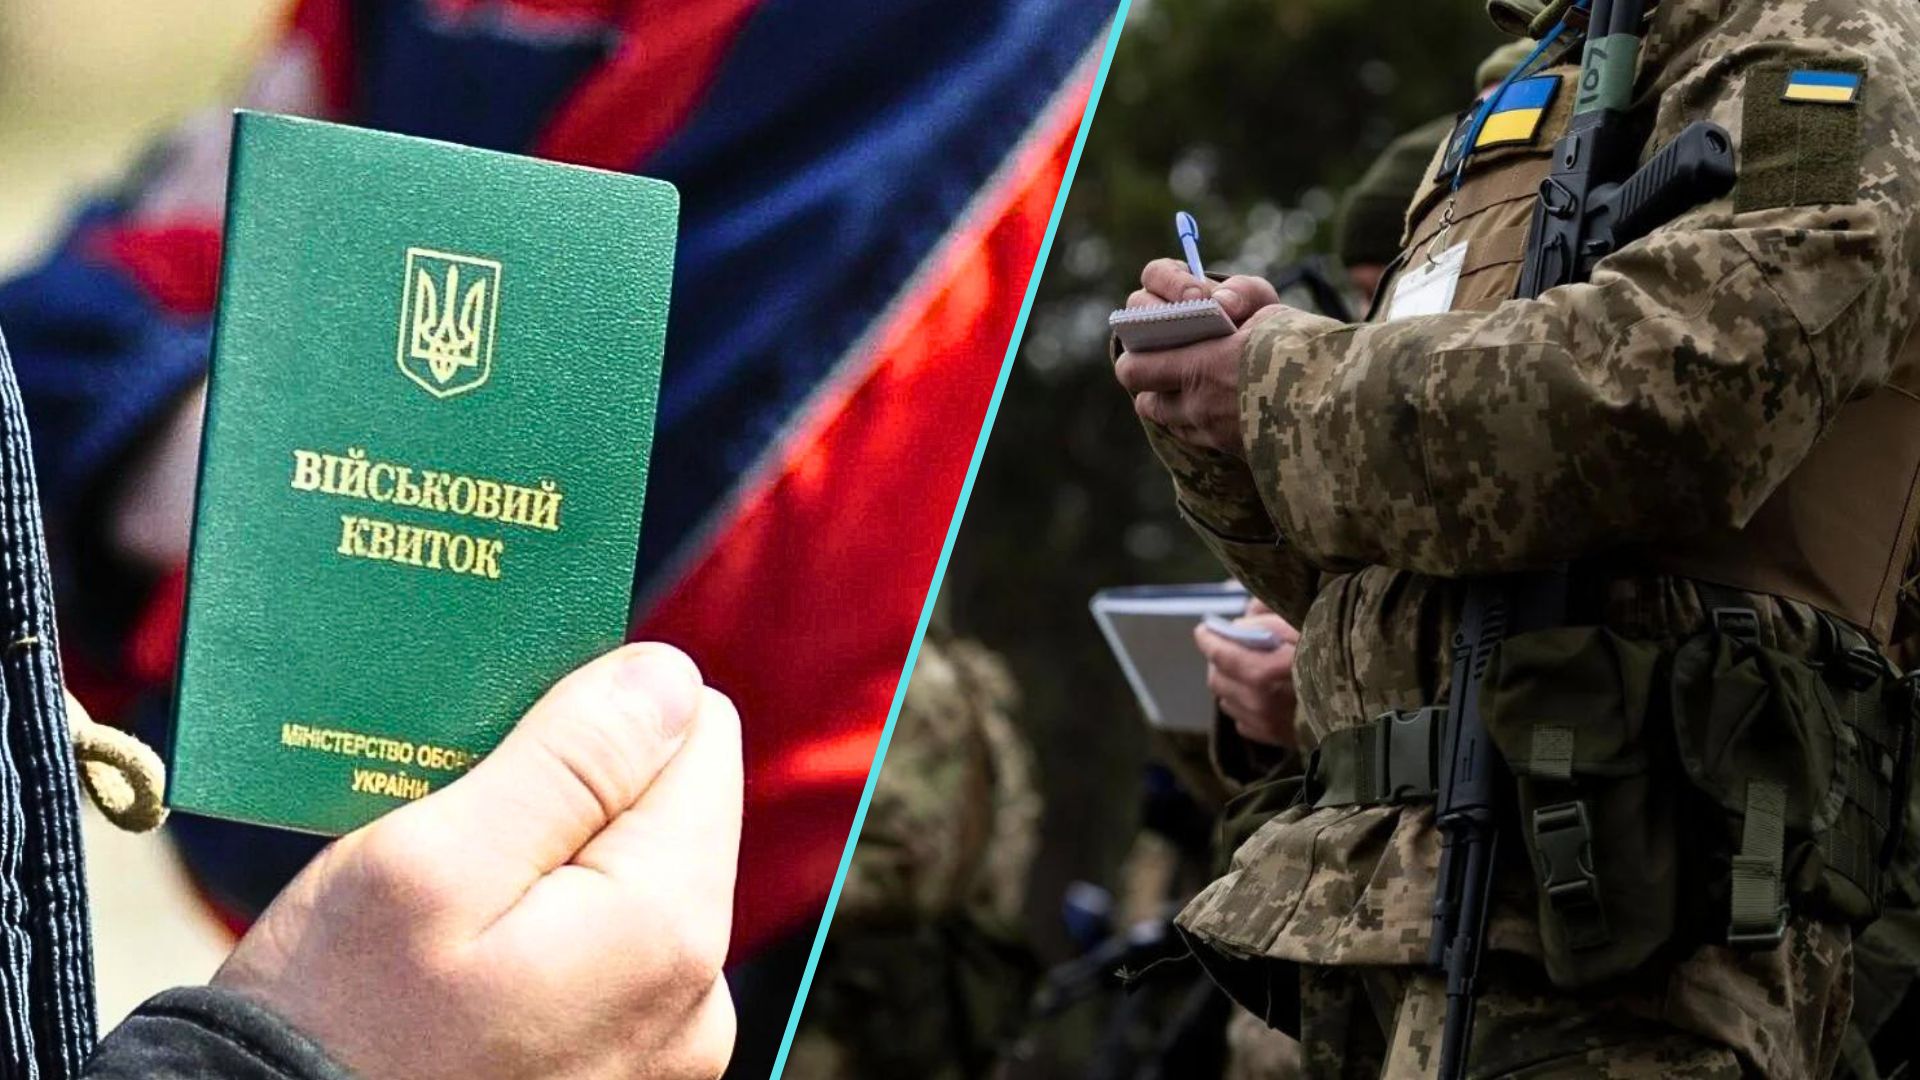 Сейчас в Украине действует военное положение и идет массовая мобилизация. Мужчины, подлежащие призыву, могут быть призваны на службу, но есть определенные группы, которые имеют право на отсрочку.